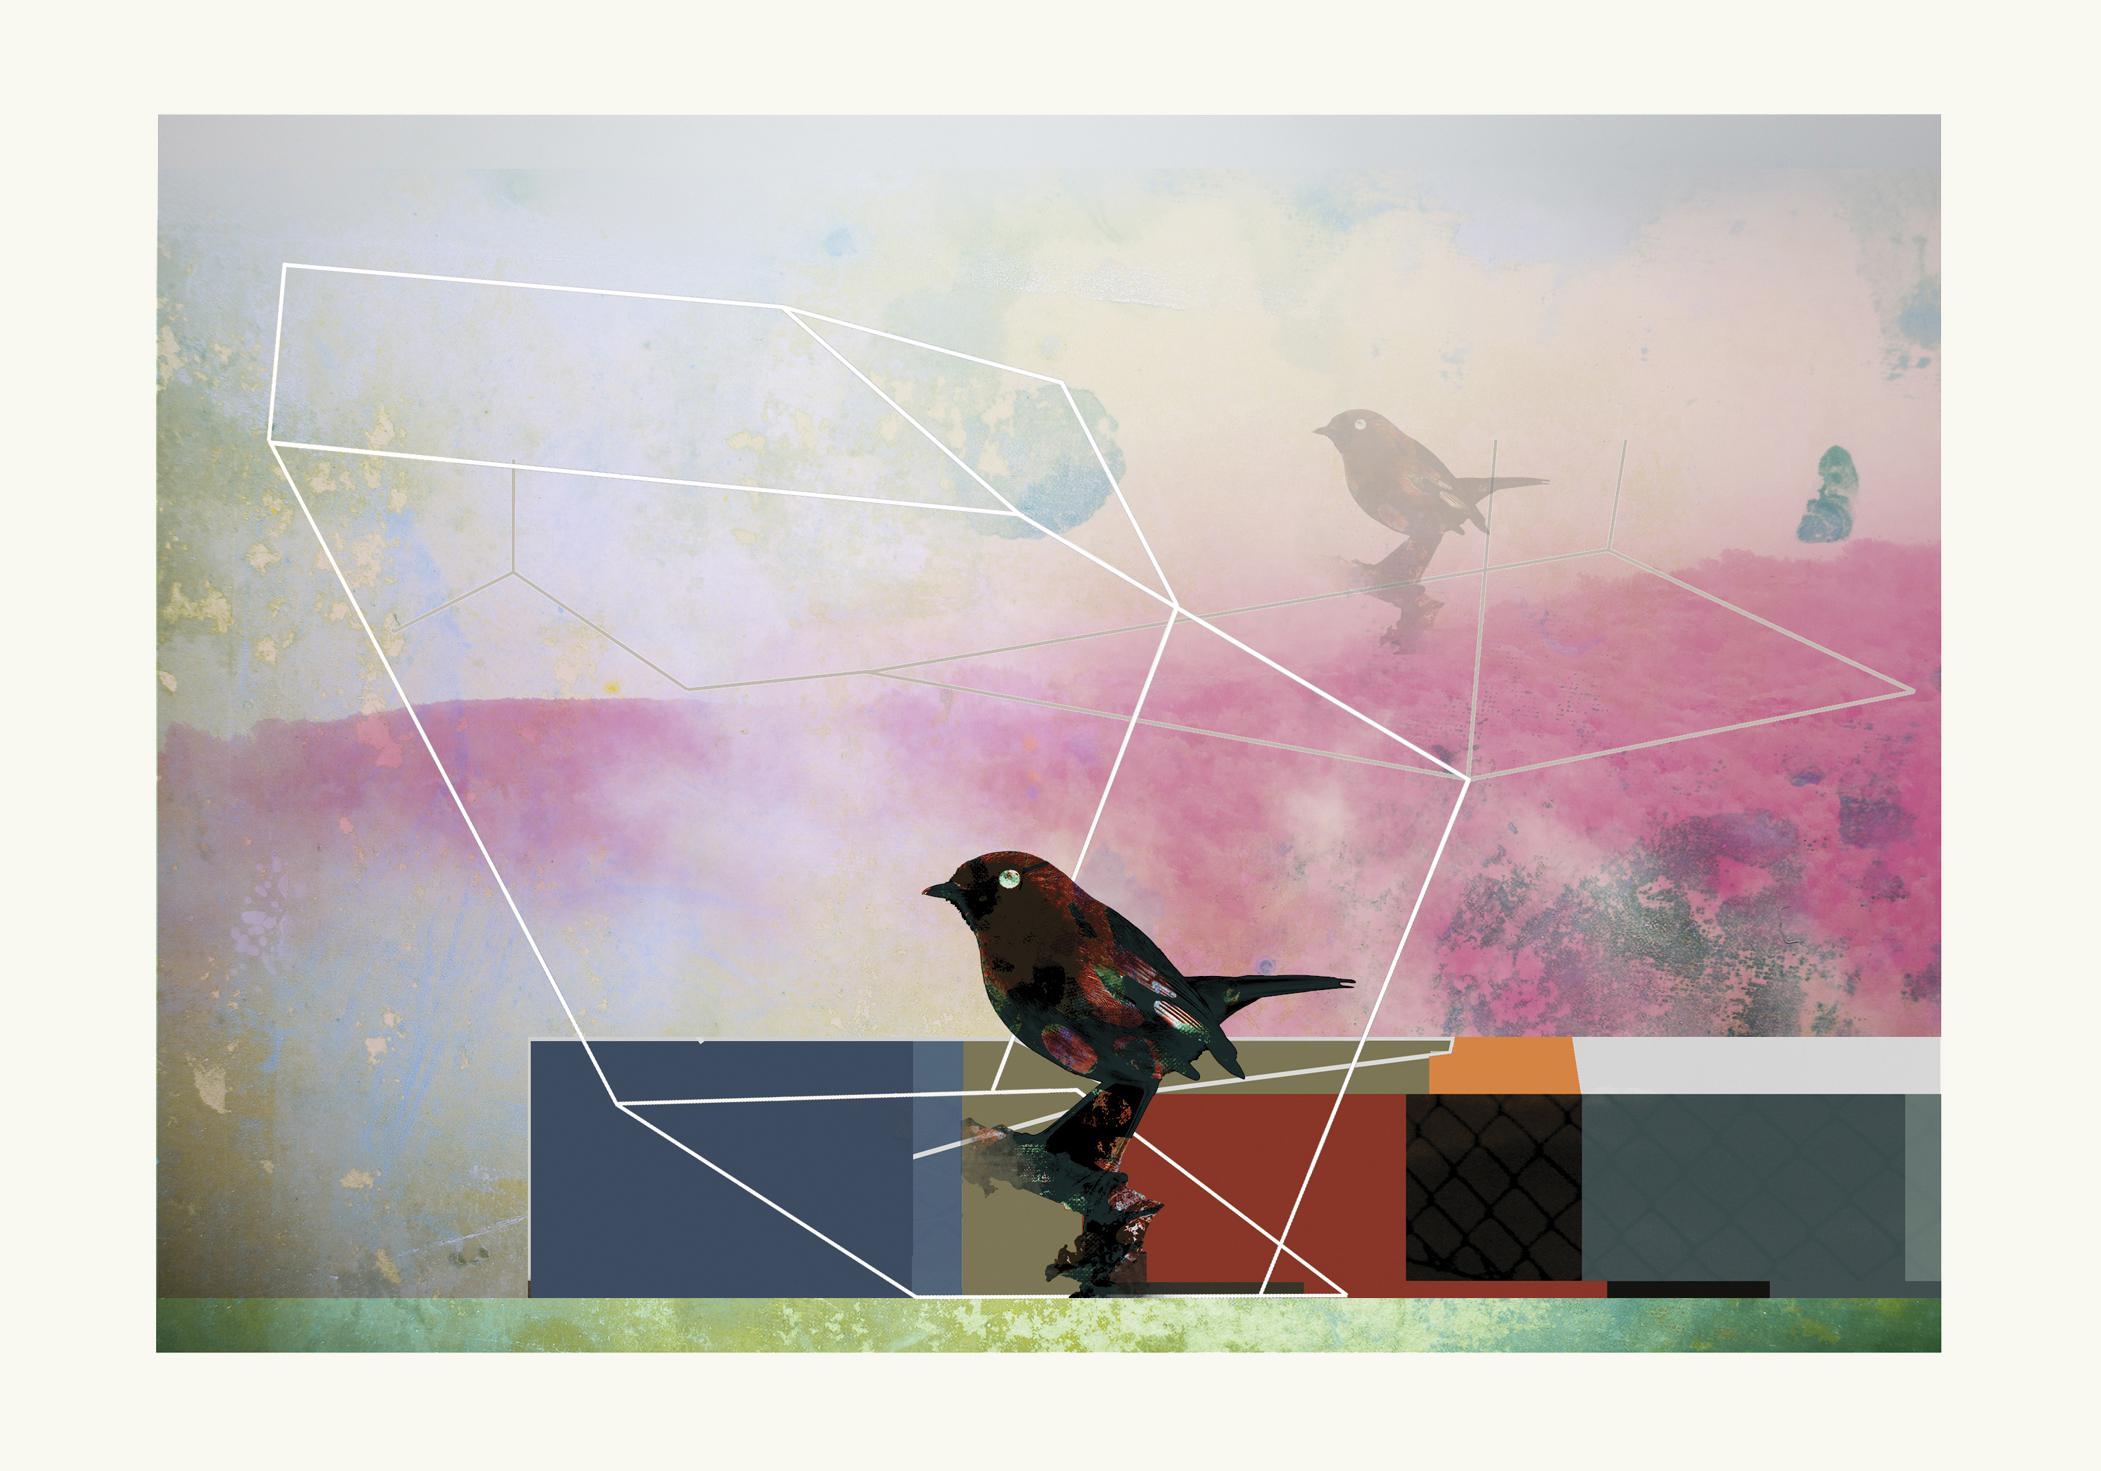 Oiseaux 5 - Contemporain, abstrait, gestuel, art urbain, pop, moderne, géométrique